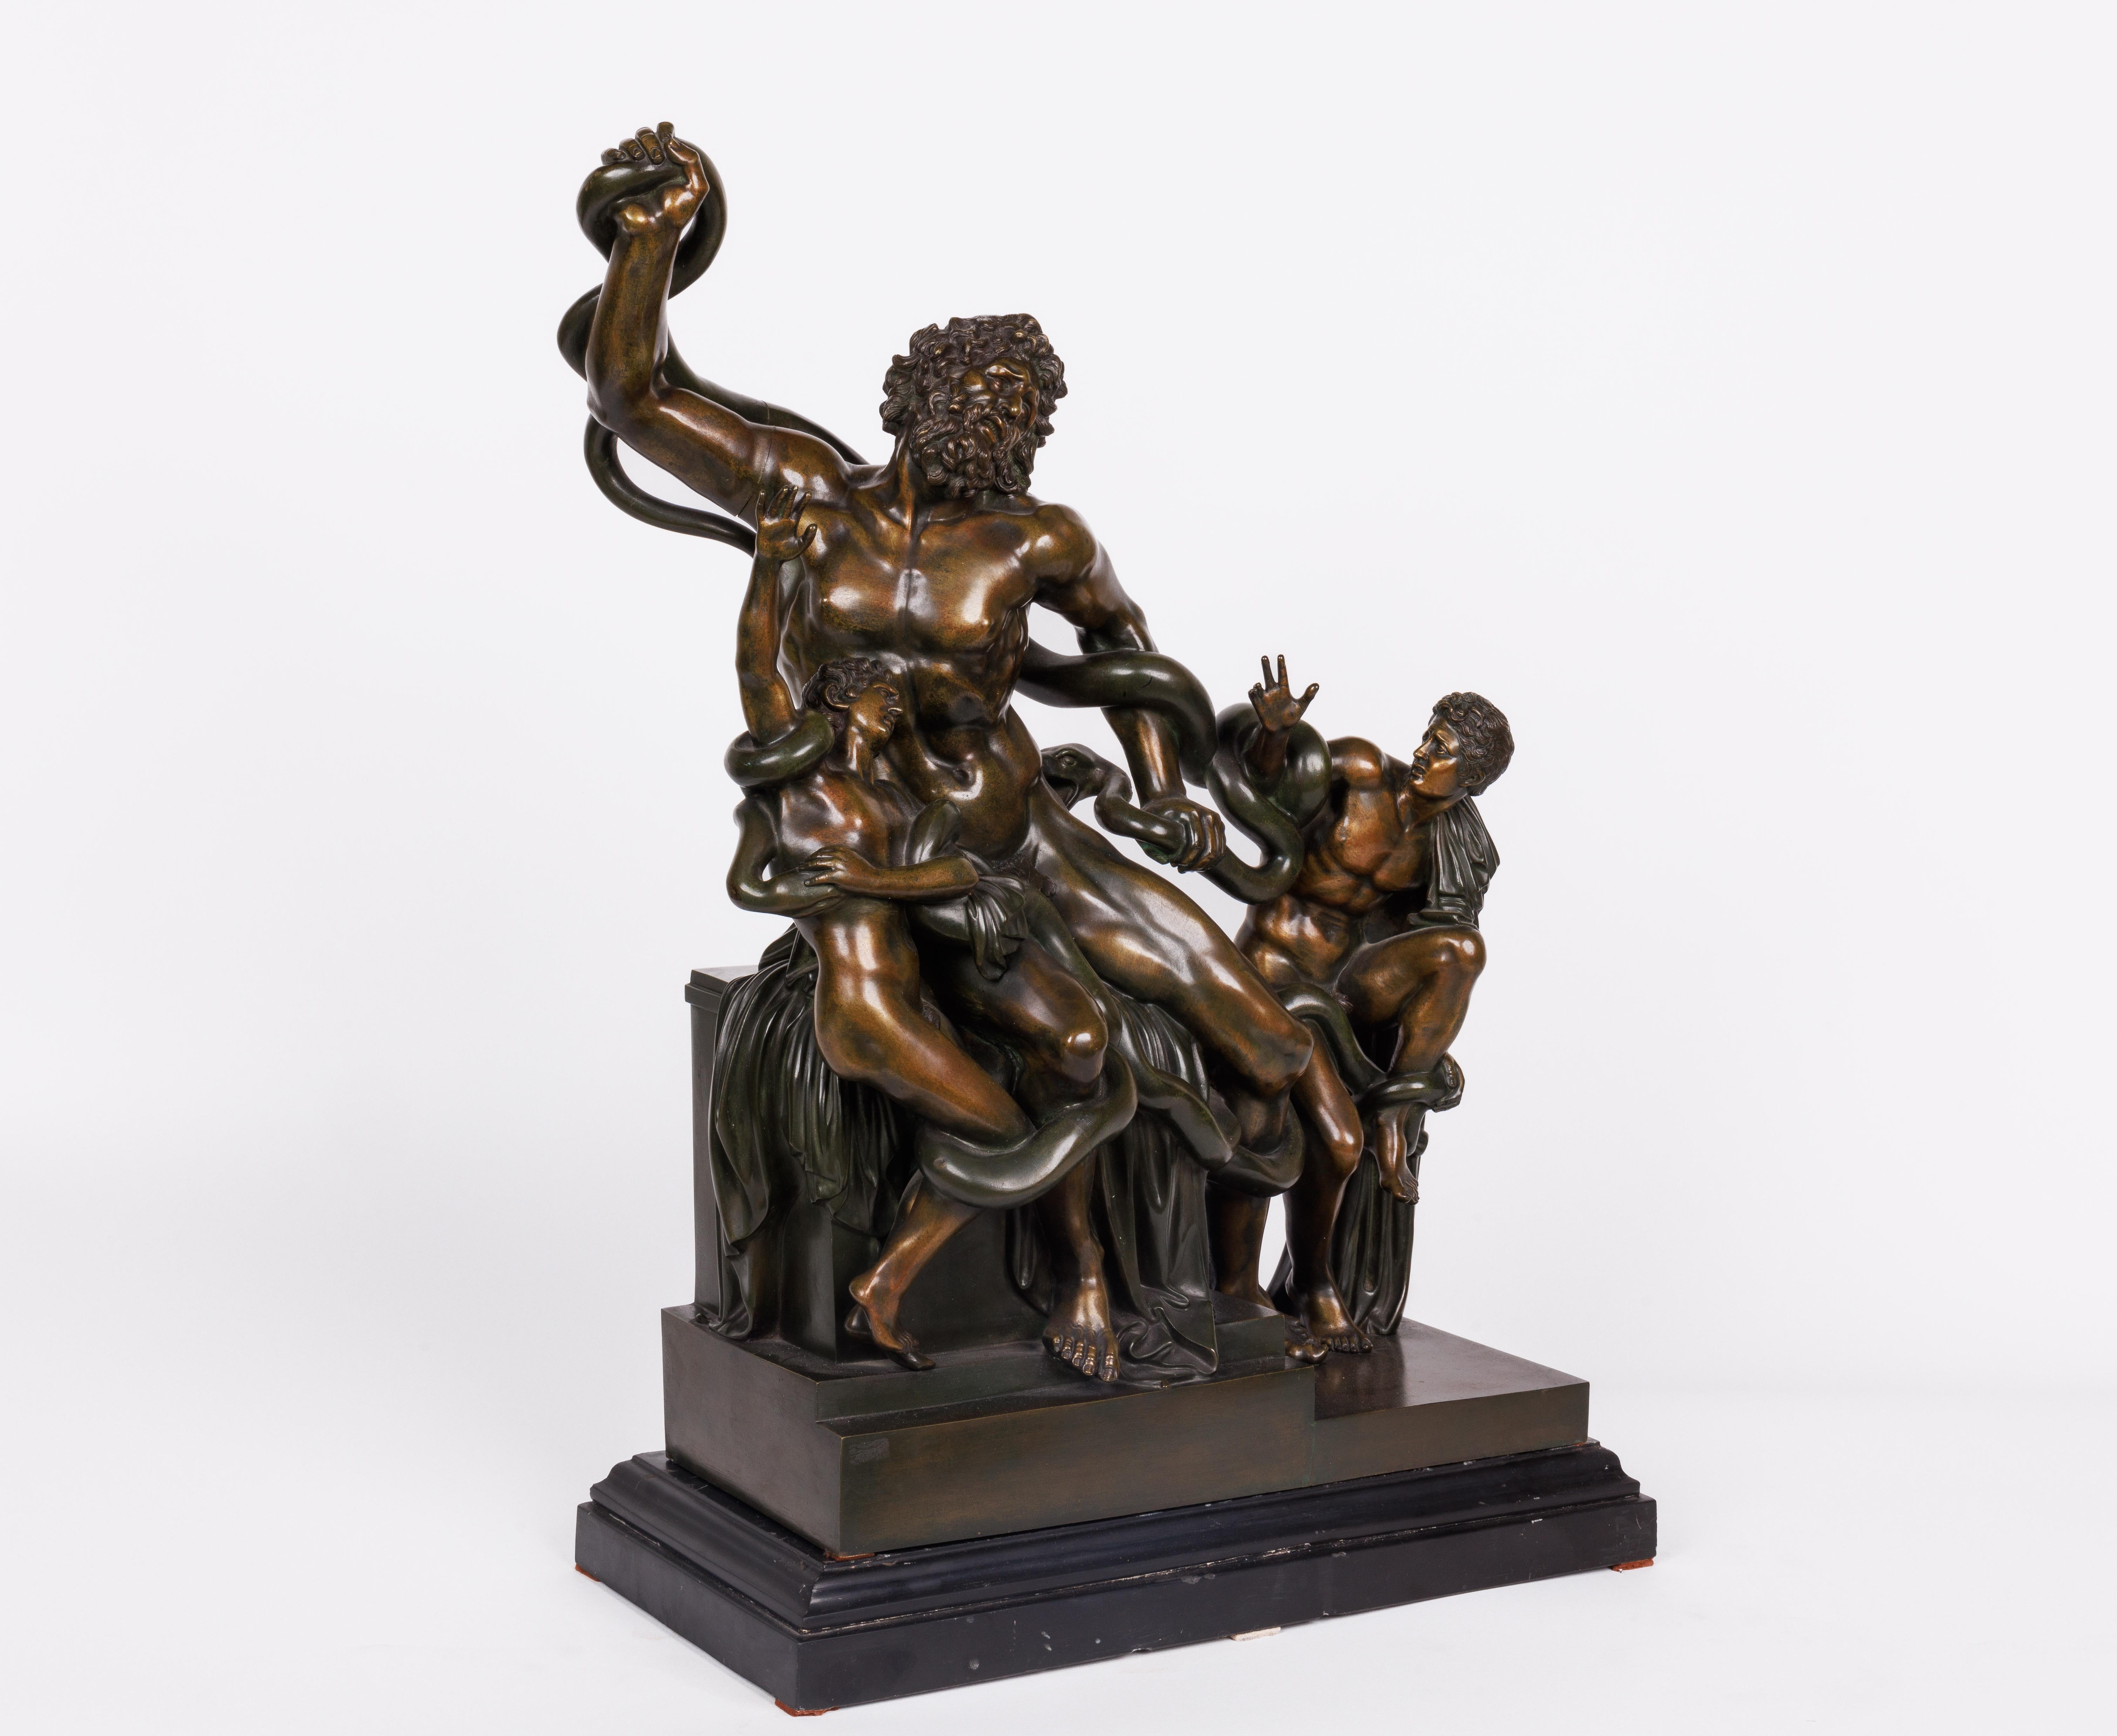 Sculpture de groupe en bronze patiné du Grand Tour italien représentant Laocoon et ses fils, d'après l'antique d'Agésandre de Rhodes, C.I.C. 1870

Sculpture de très belle qualité, reposant sur un socle en ardoise noire. Nous n'avons trouvé aucune